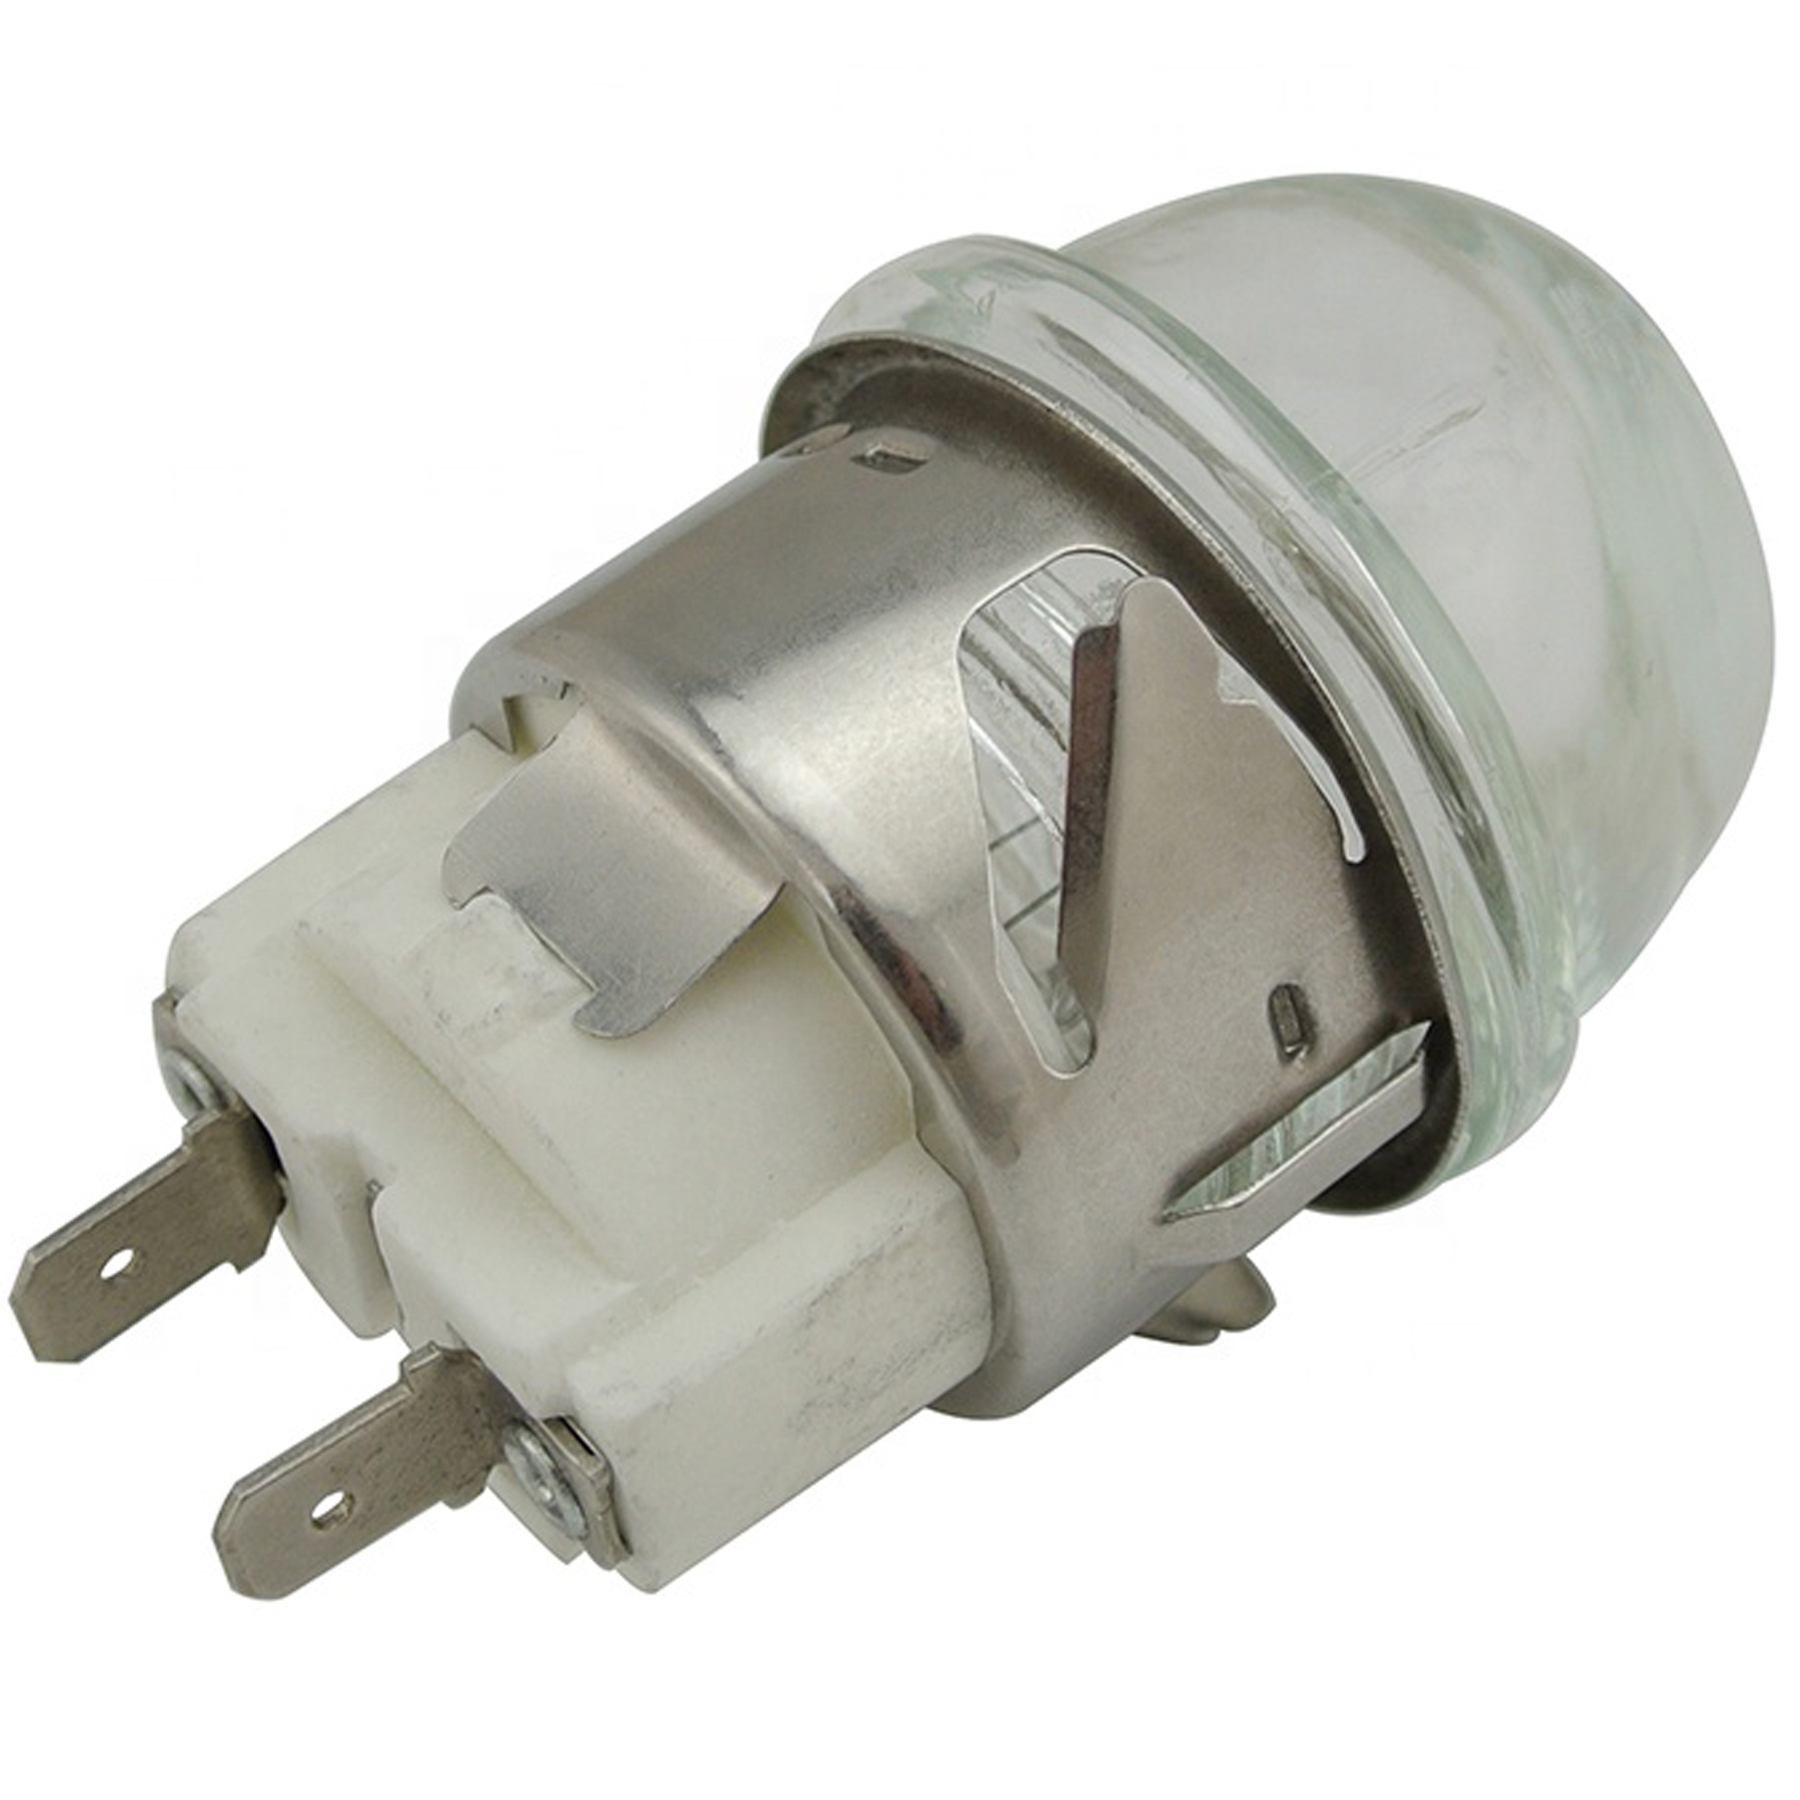 AC110-220V 10-100W G9 500 Degrees Oven Light Bulb Adapter Ceramic Lamp Holder